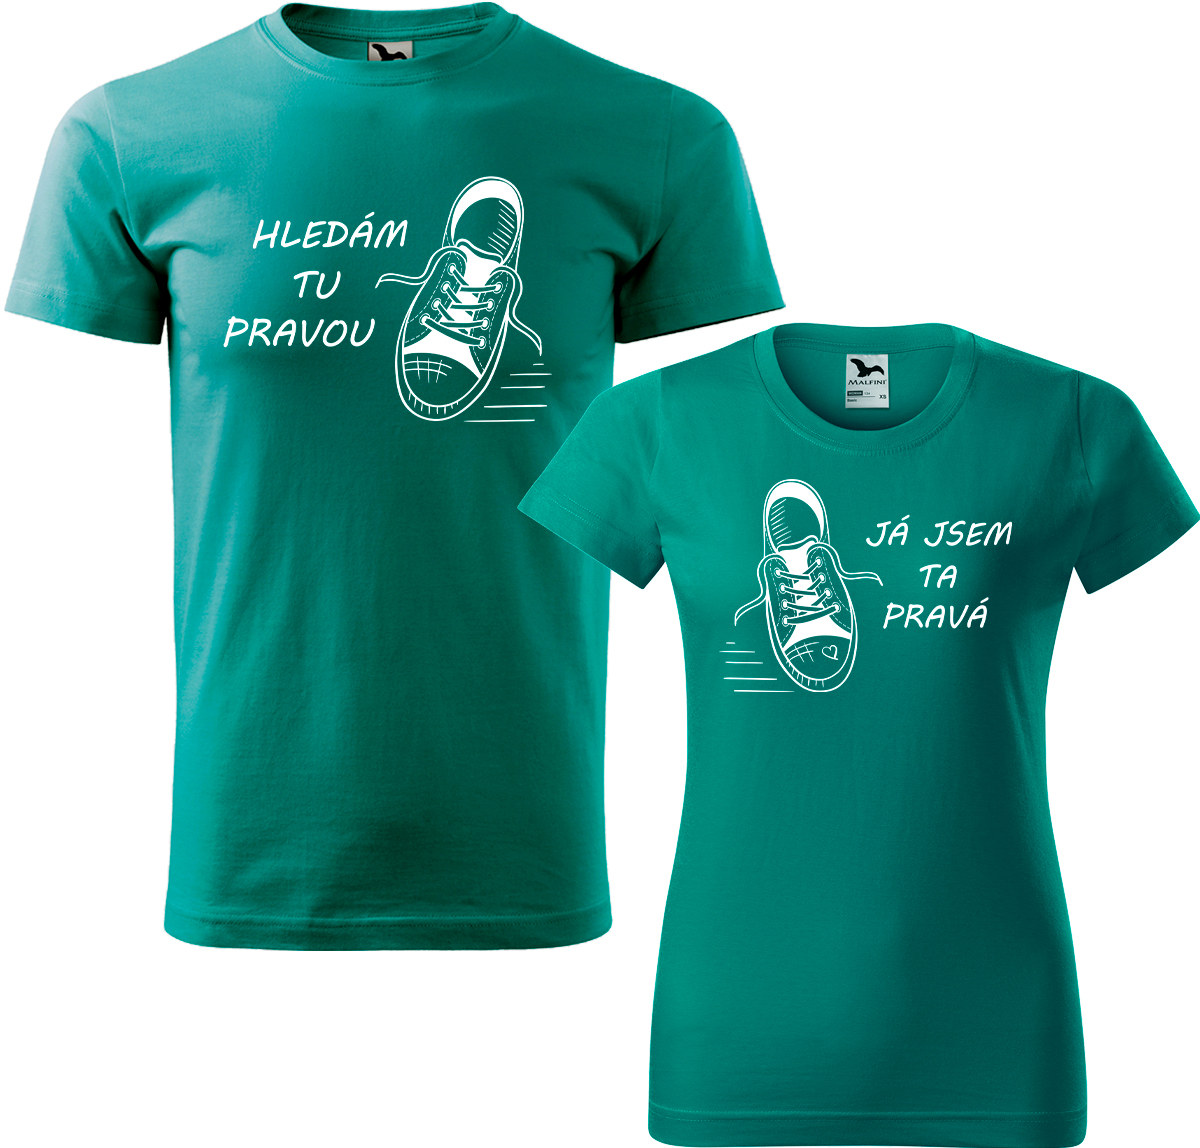 Trička pro páry - Kecky Barva: Emerald (19), Velikost dámské tričko: S, Velikost pánské tričko: 3XL